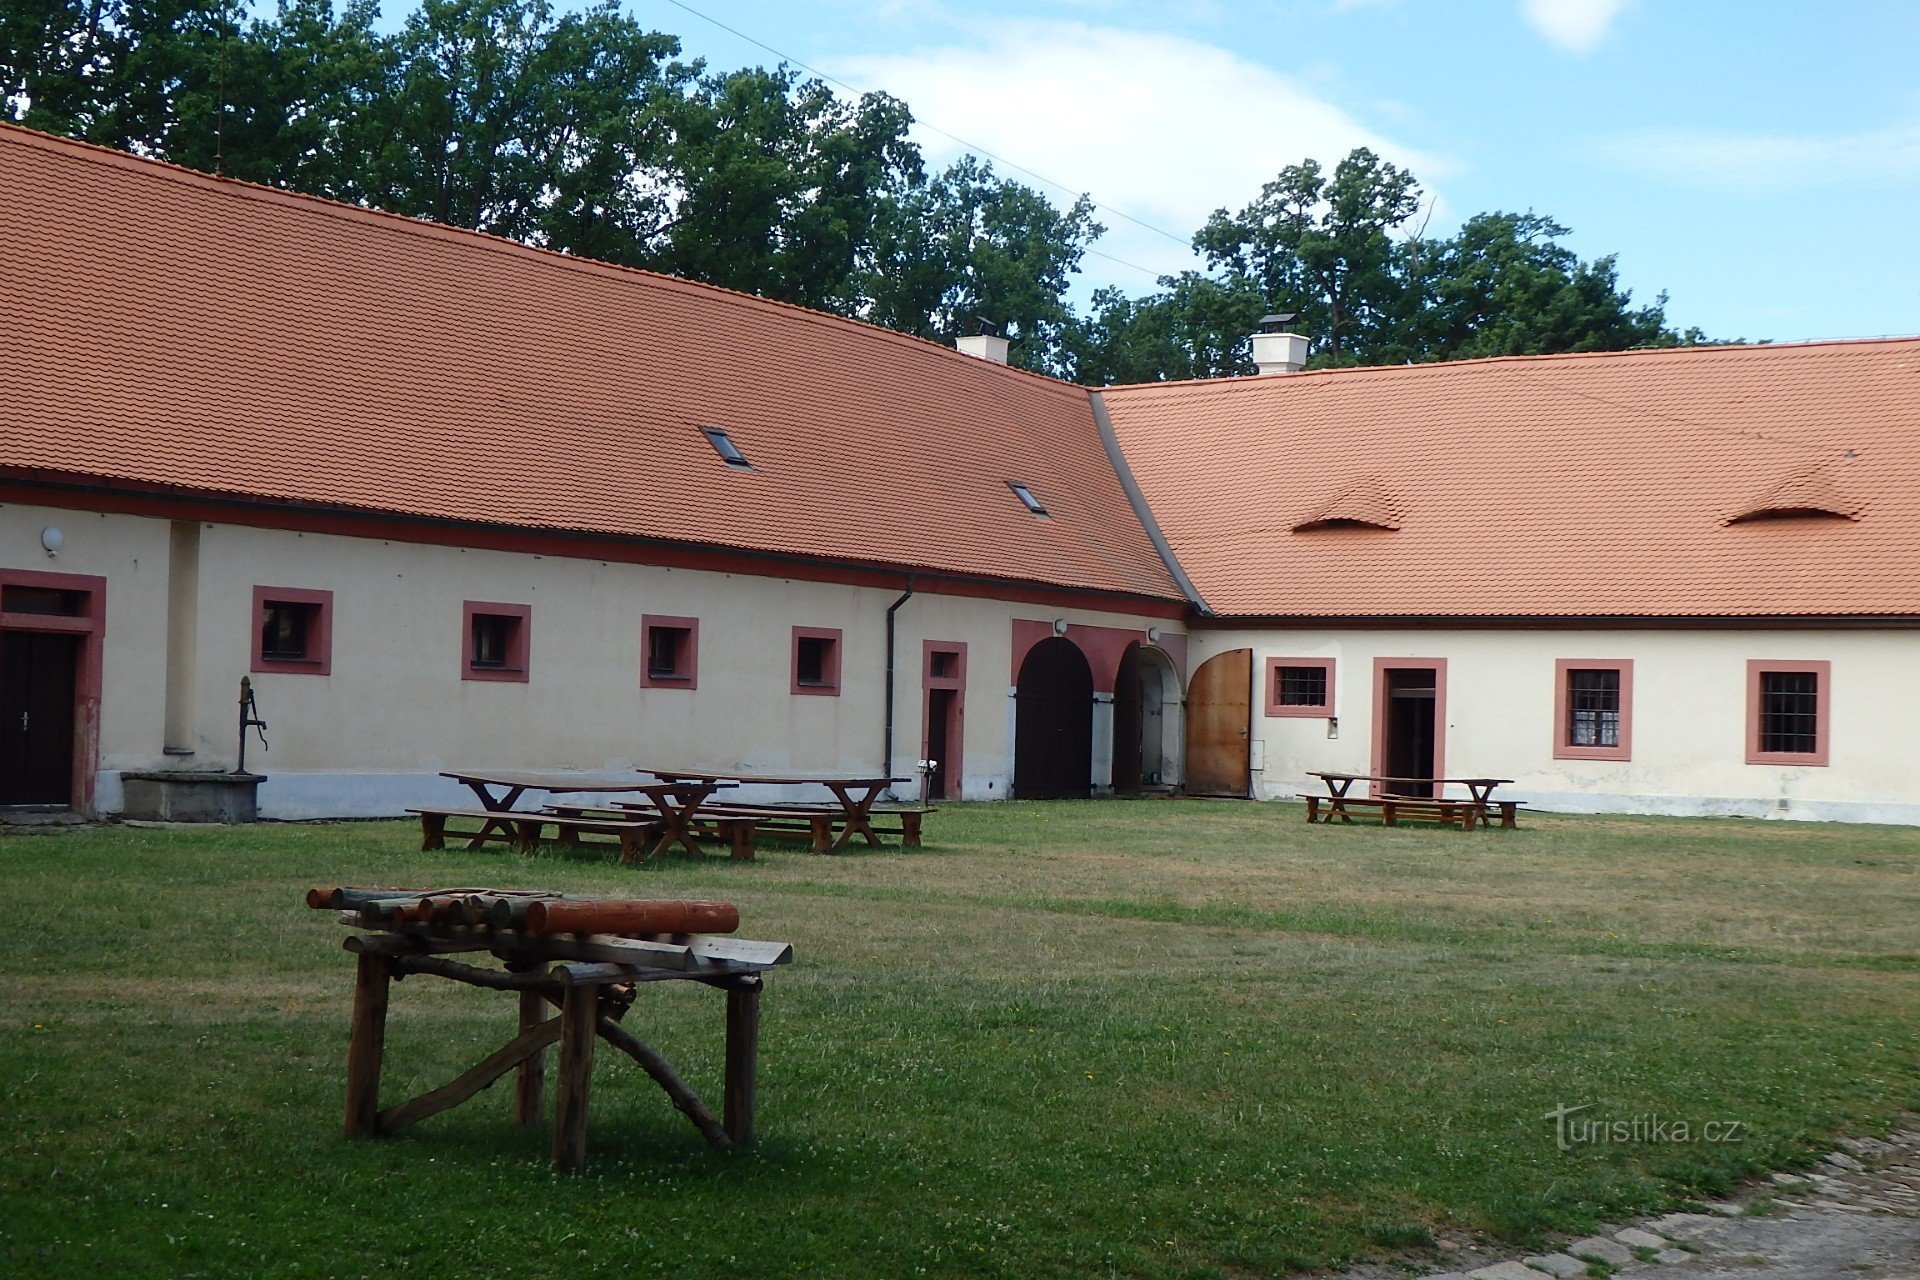 Hluboká nad Vltavou: Cabana de vânătoare Ohrada și Grădina Zoologică